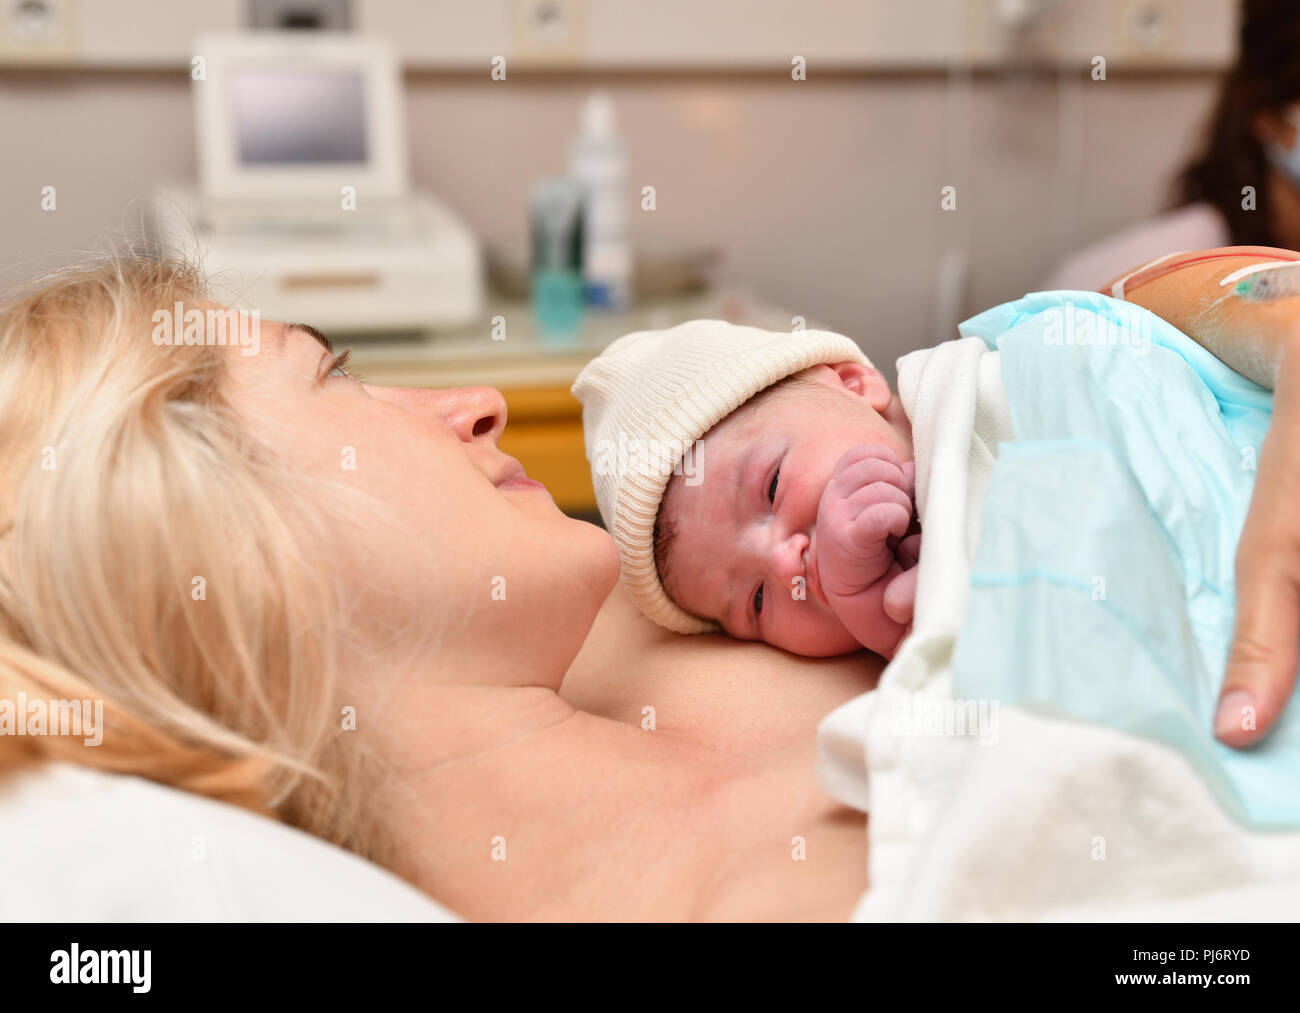 Maman et bébé nouveau-né de la peau la peau après la naissance à l'hôpital Banque D'Images